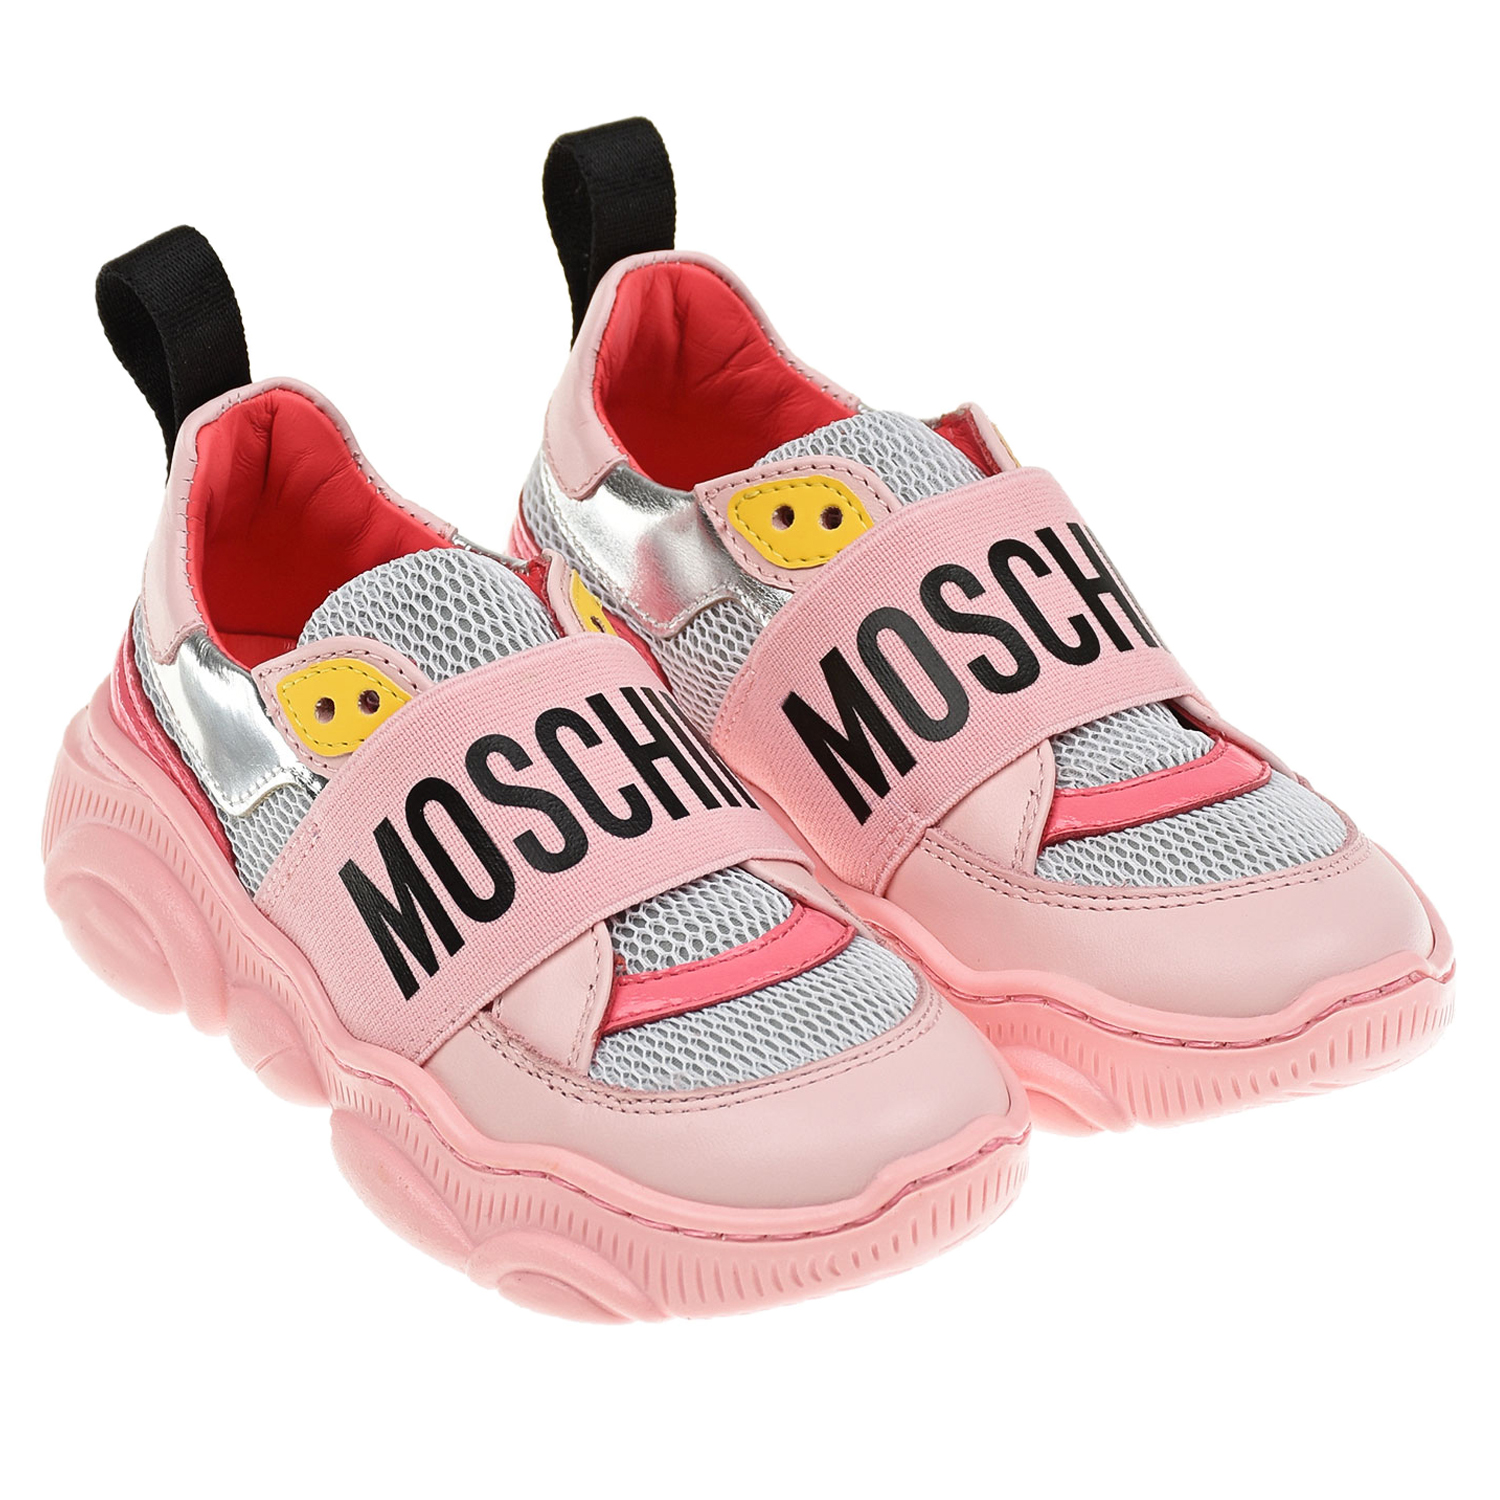 Розовые кроссовки с серебристыми вставками Moschino детские